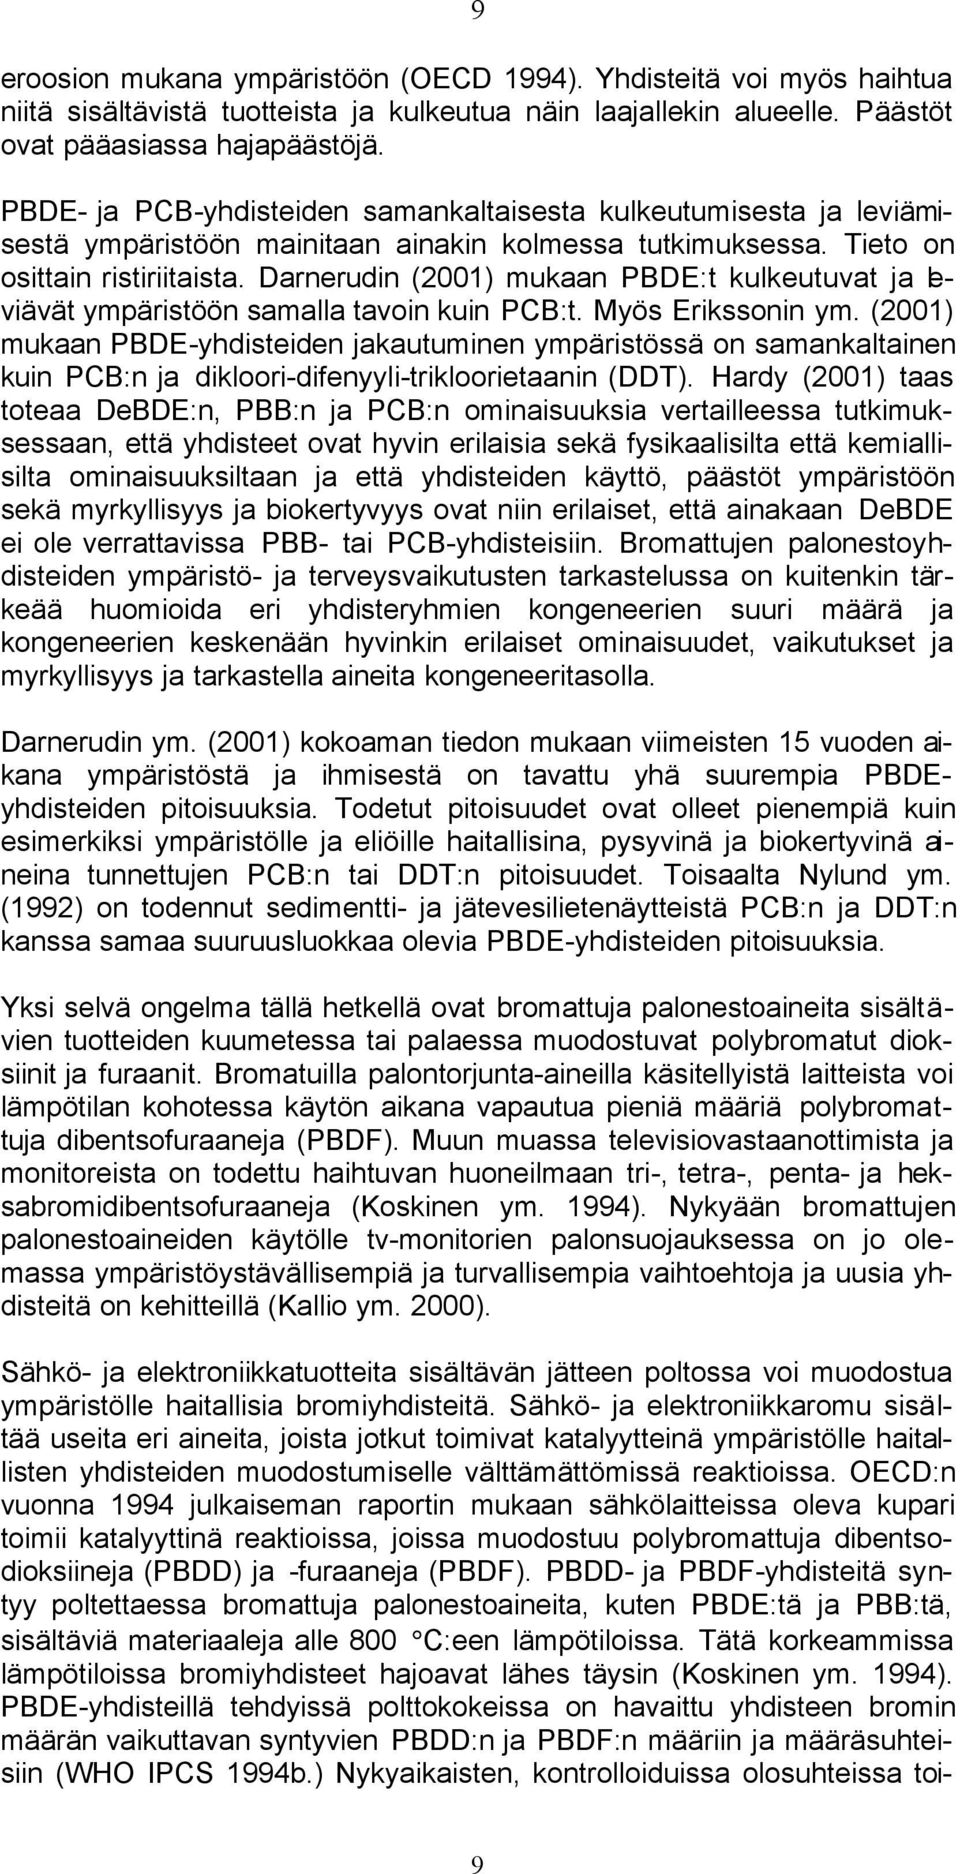 Darnerudin (2001) mukaan PBDE:t kulkeutuvat ja leviävät ympäristöön samalla tavoin kuin PCB:t. Myös Erikssonin ym.